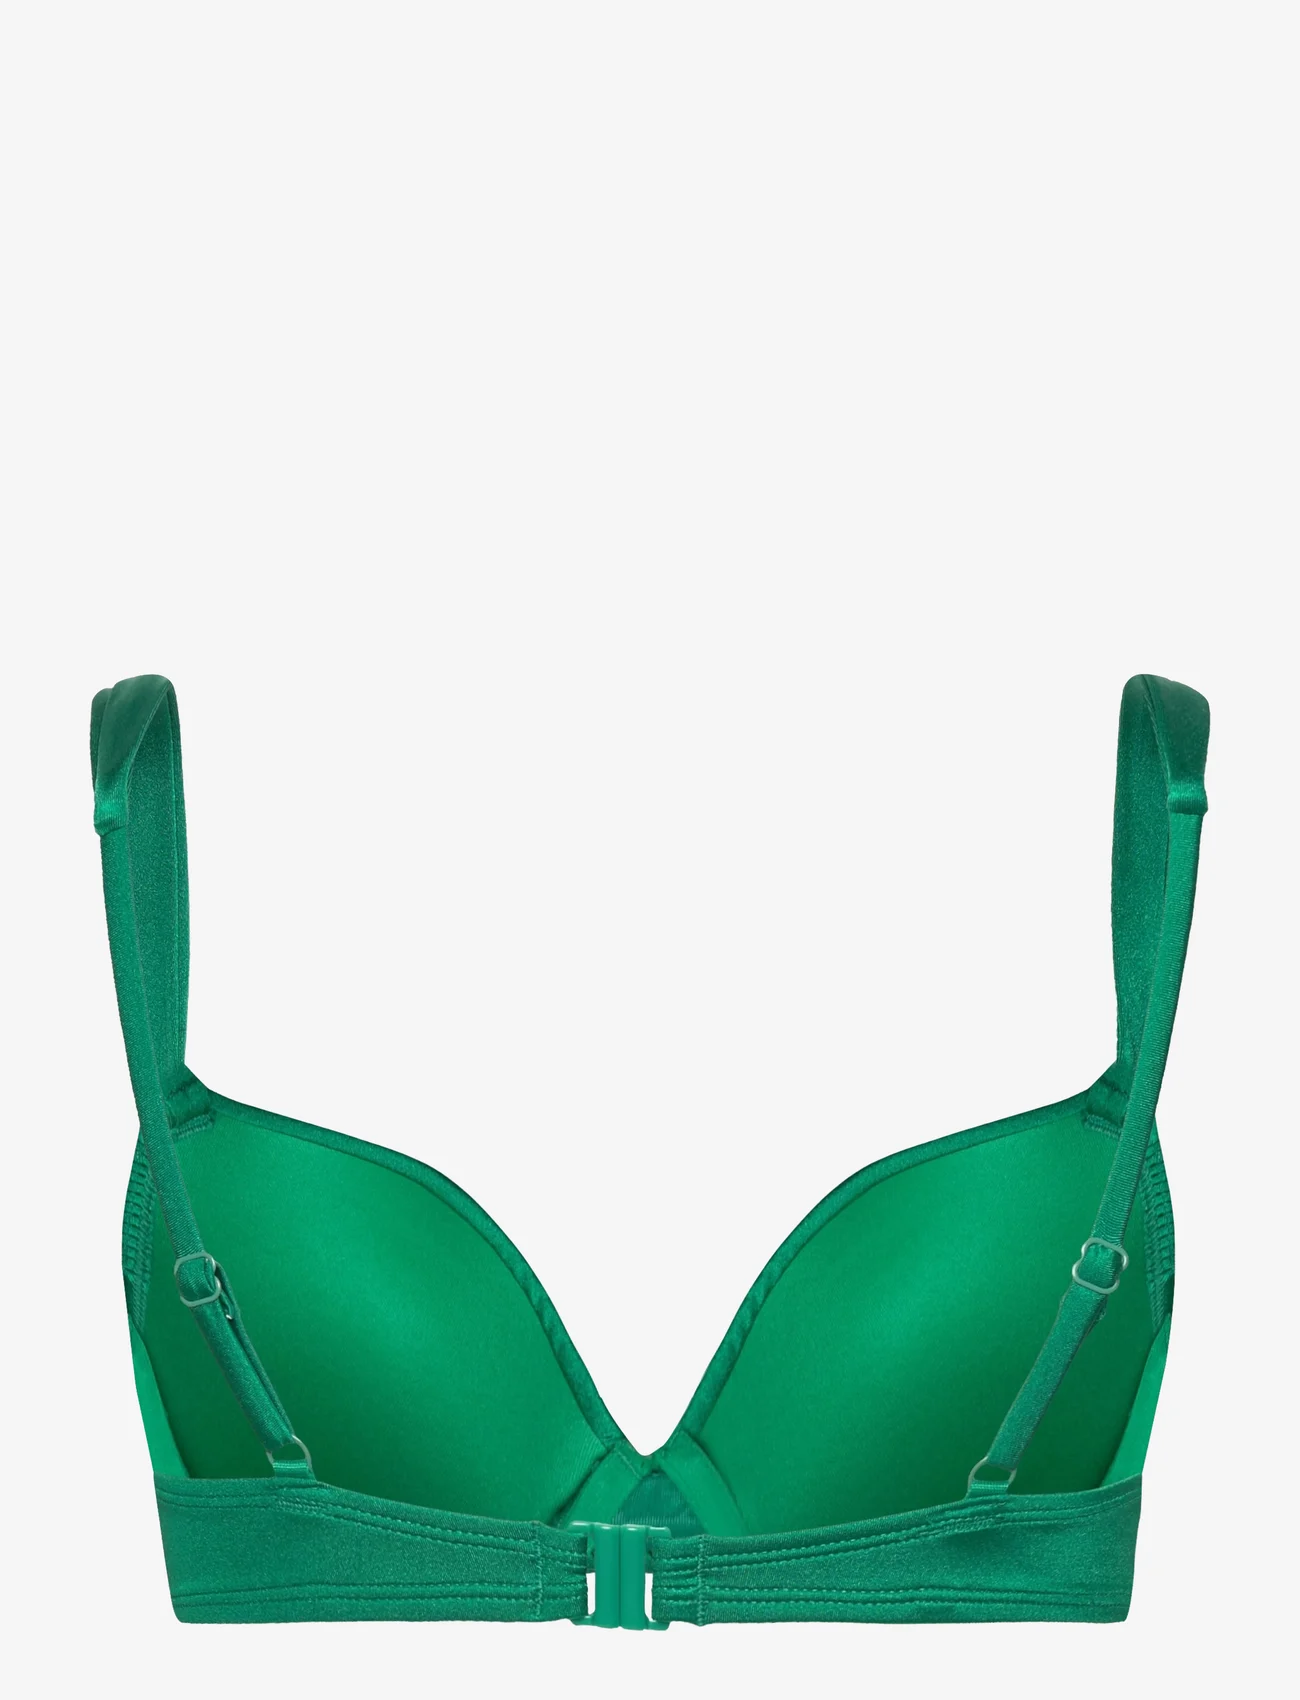 Hunkemöller - Antigua pp - bikini augšiņa ar lencēm - emerald - 1